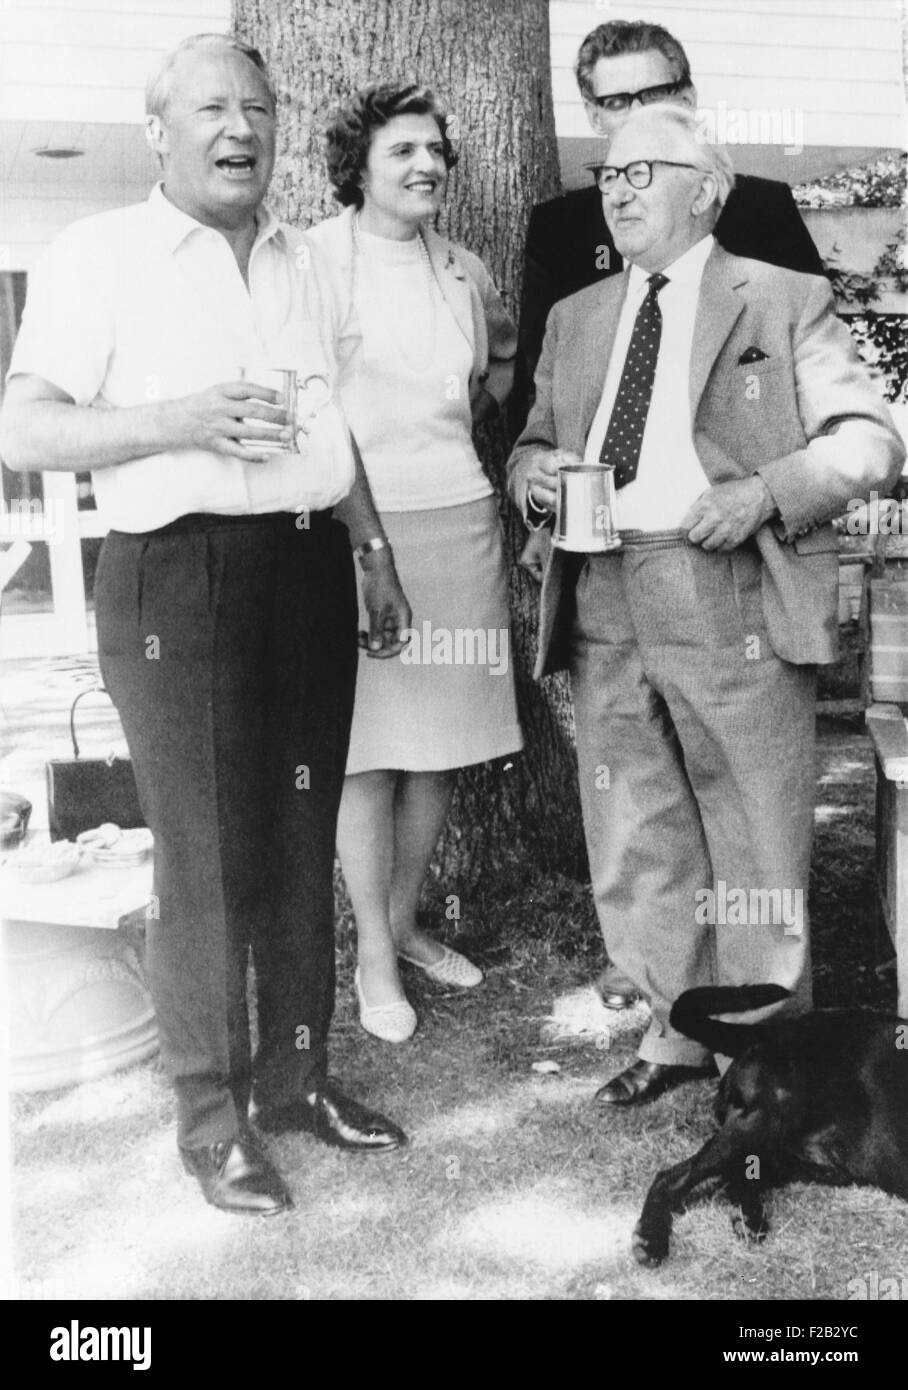 Neu gewählte britische konservative Premierminister Edward Heath (links) mit seiner Familie. L-r: seine Schwägerin, Muriel, Frau seines Bruders John (hinten) und ihr Vater William (rechts). Heaths Herausforderungen waren Inflation, Streiks und Unruhen Nordirland. 22. Juni 1970. (CSU 2015 7 295) Stockfoto